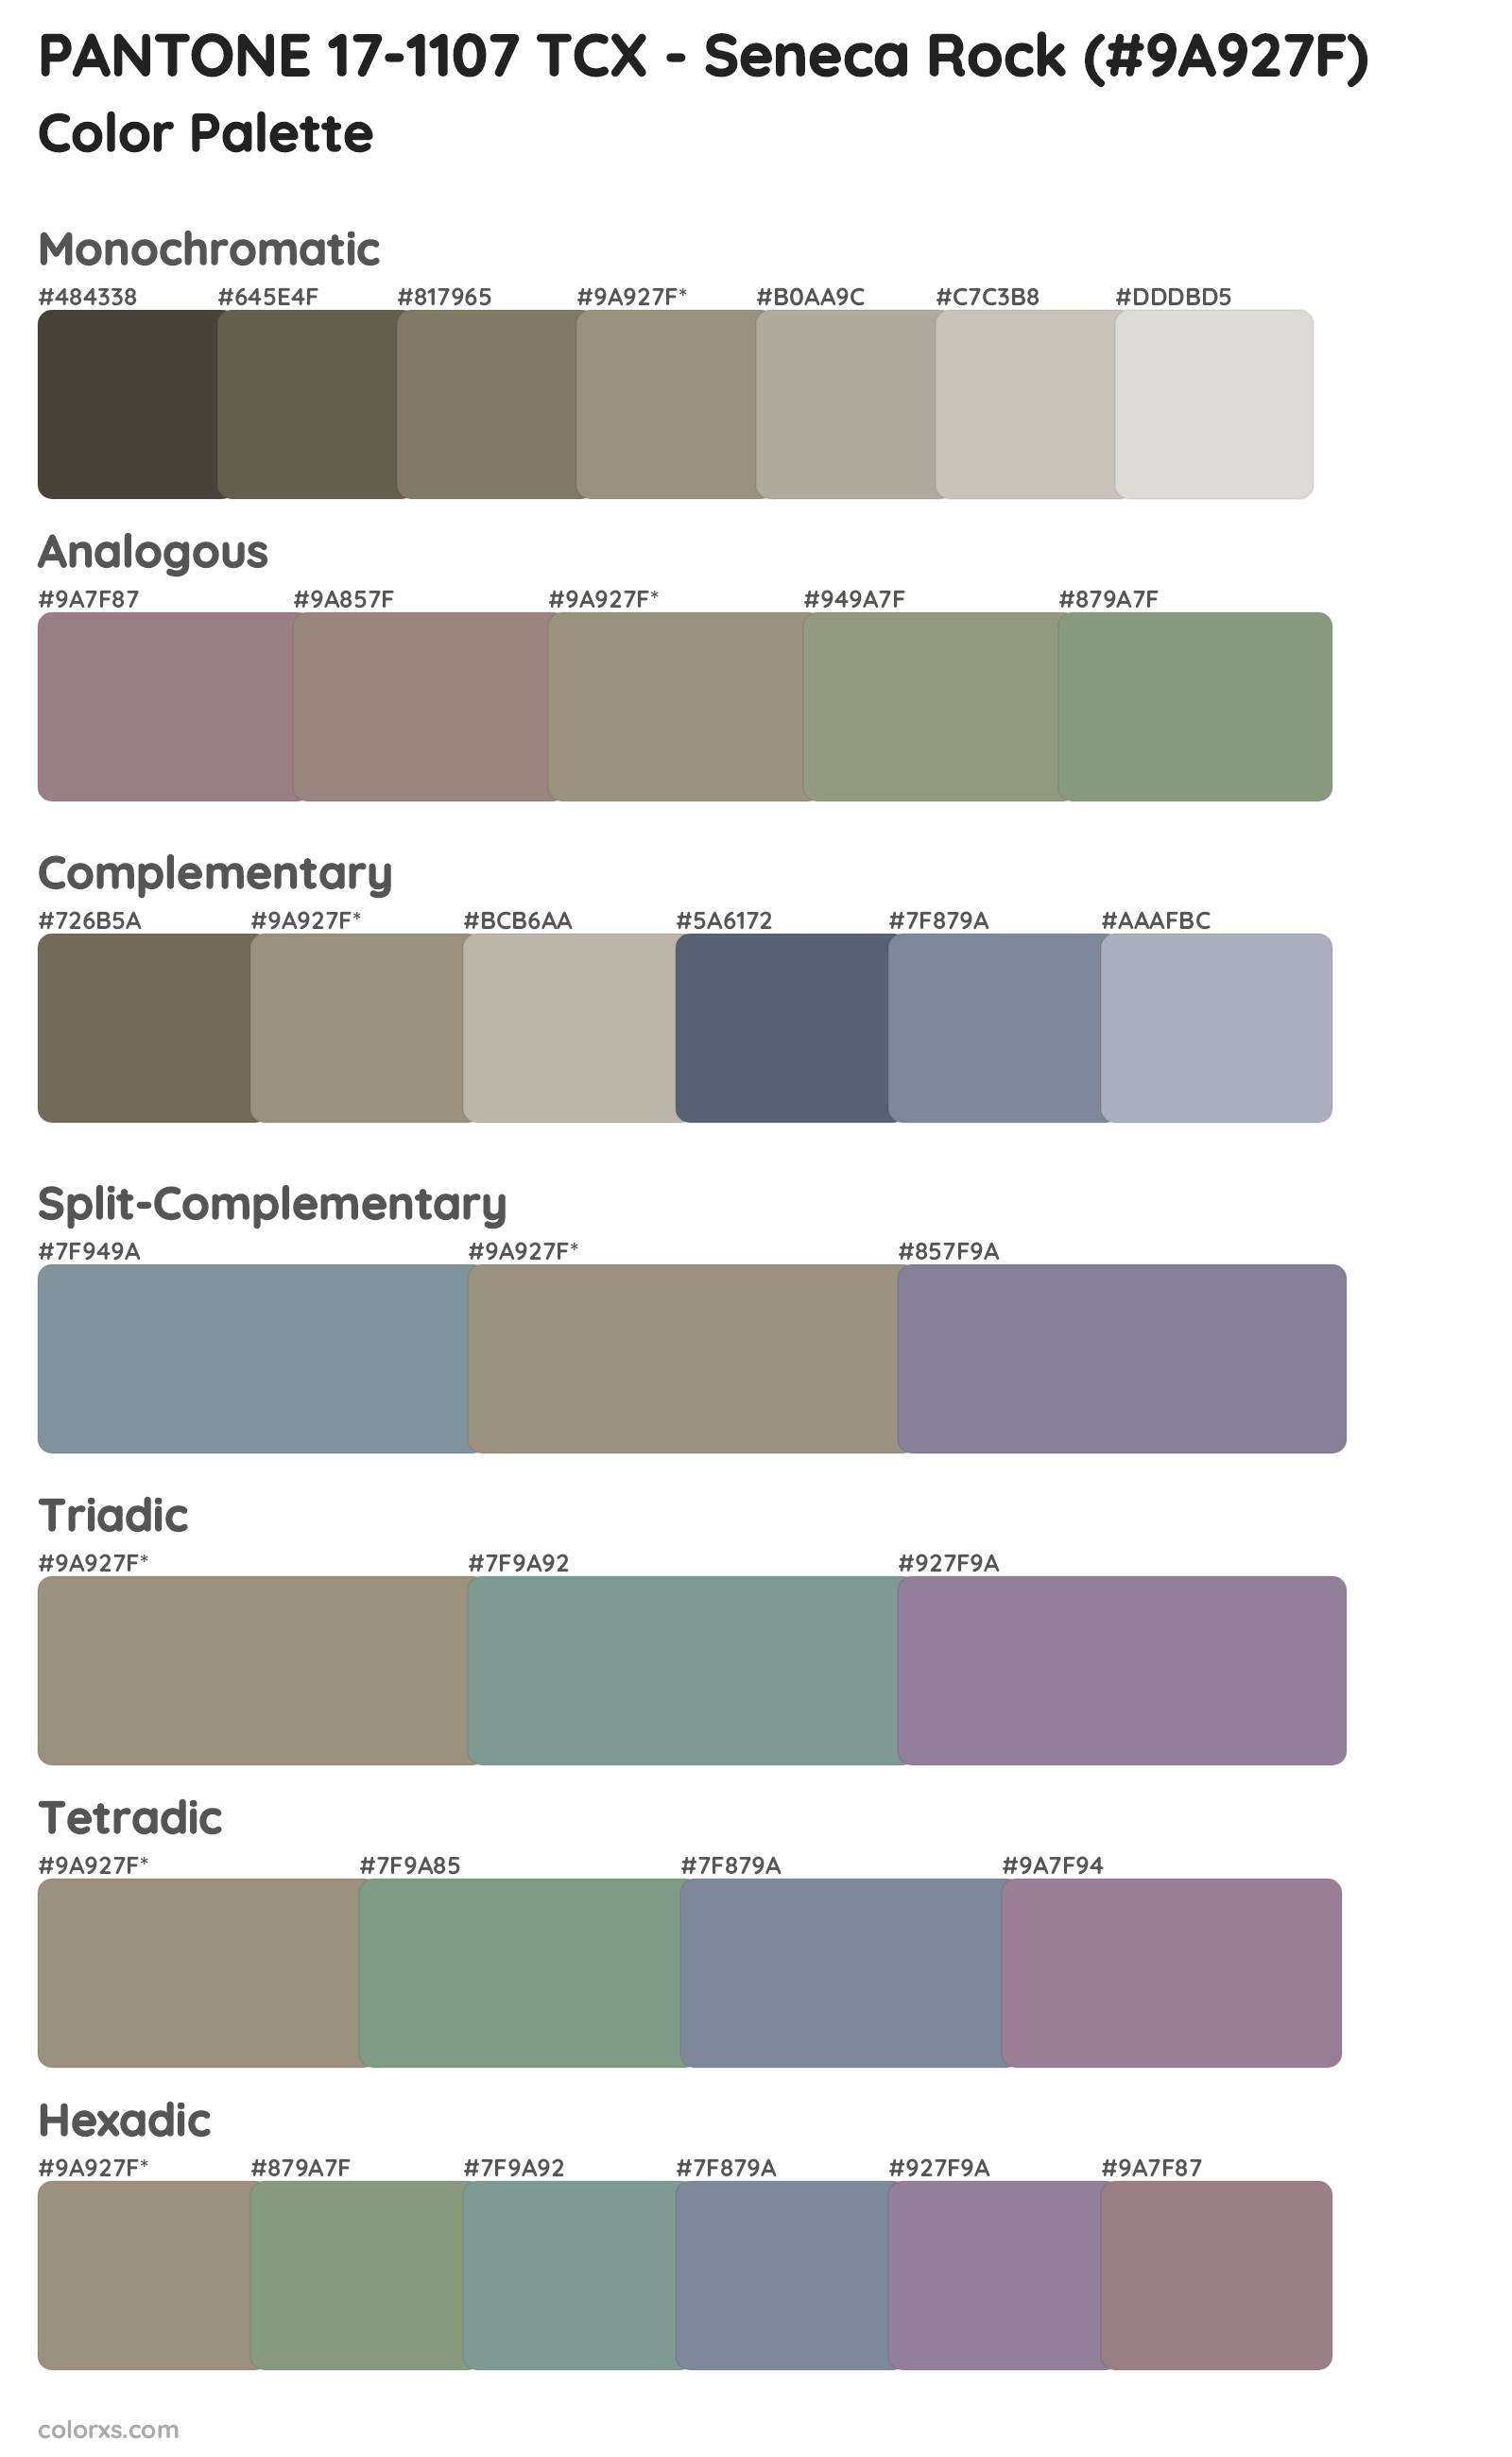 PANTONE 17-1107 TCX - Seneca Rock Color Scheme Palettes